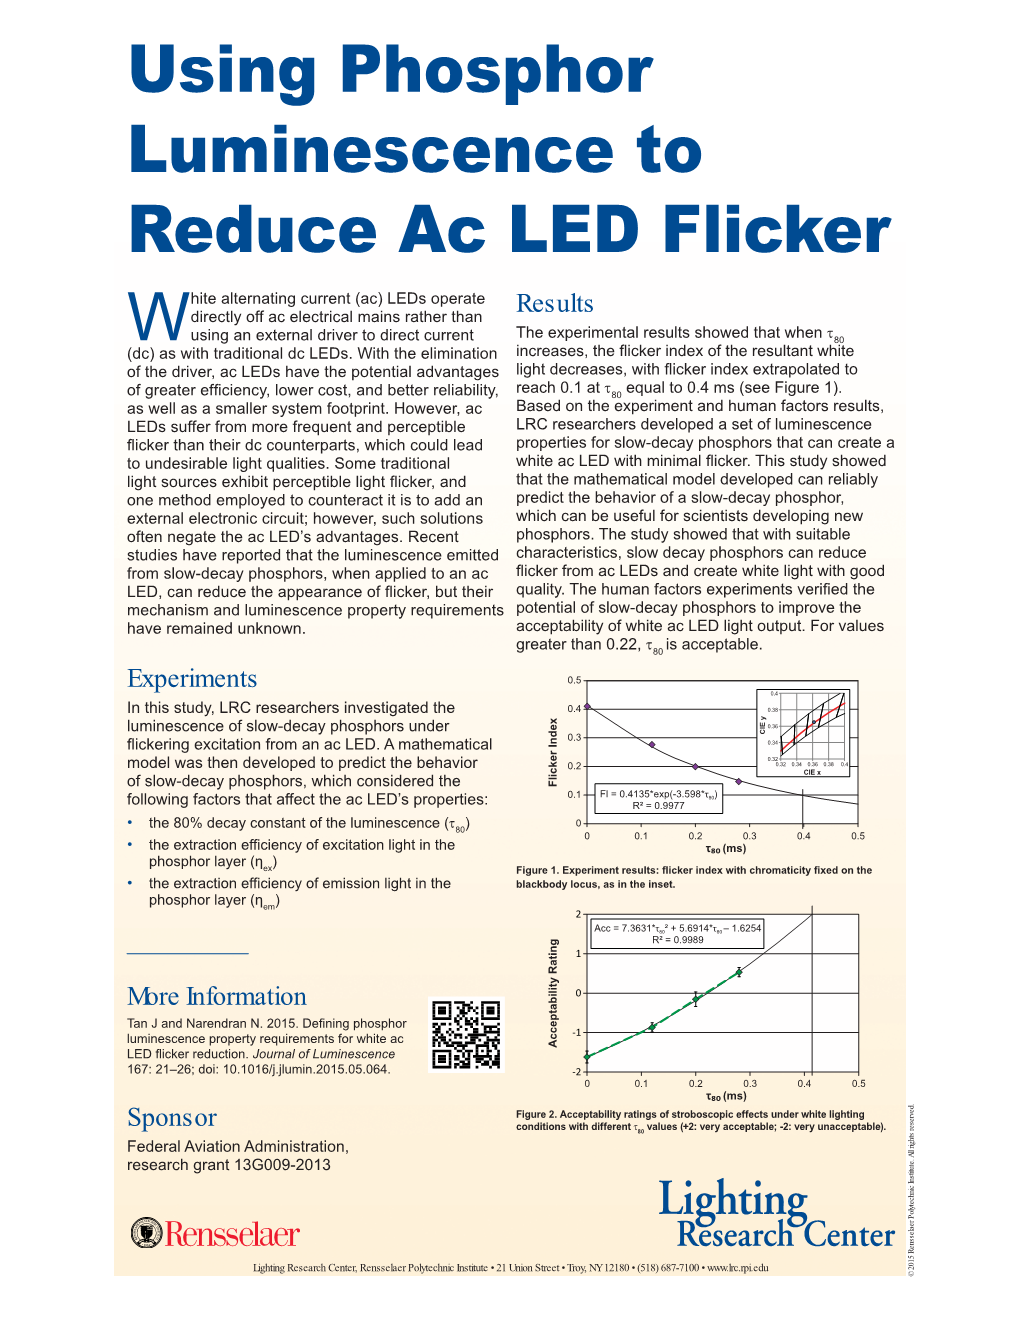 Using Phosphor Luminescence to Reduce Ac LED Flicker